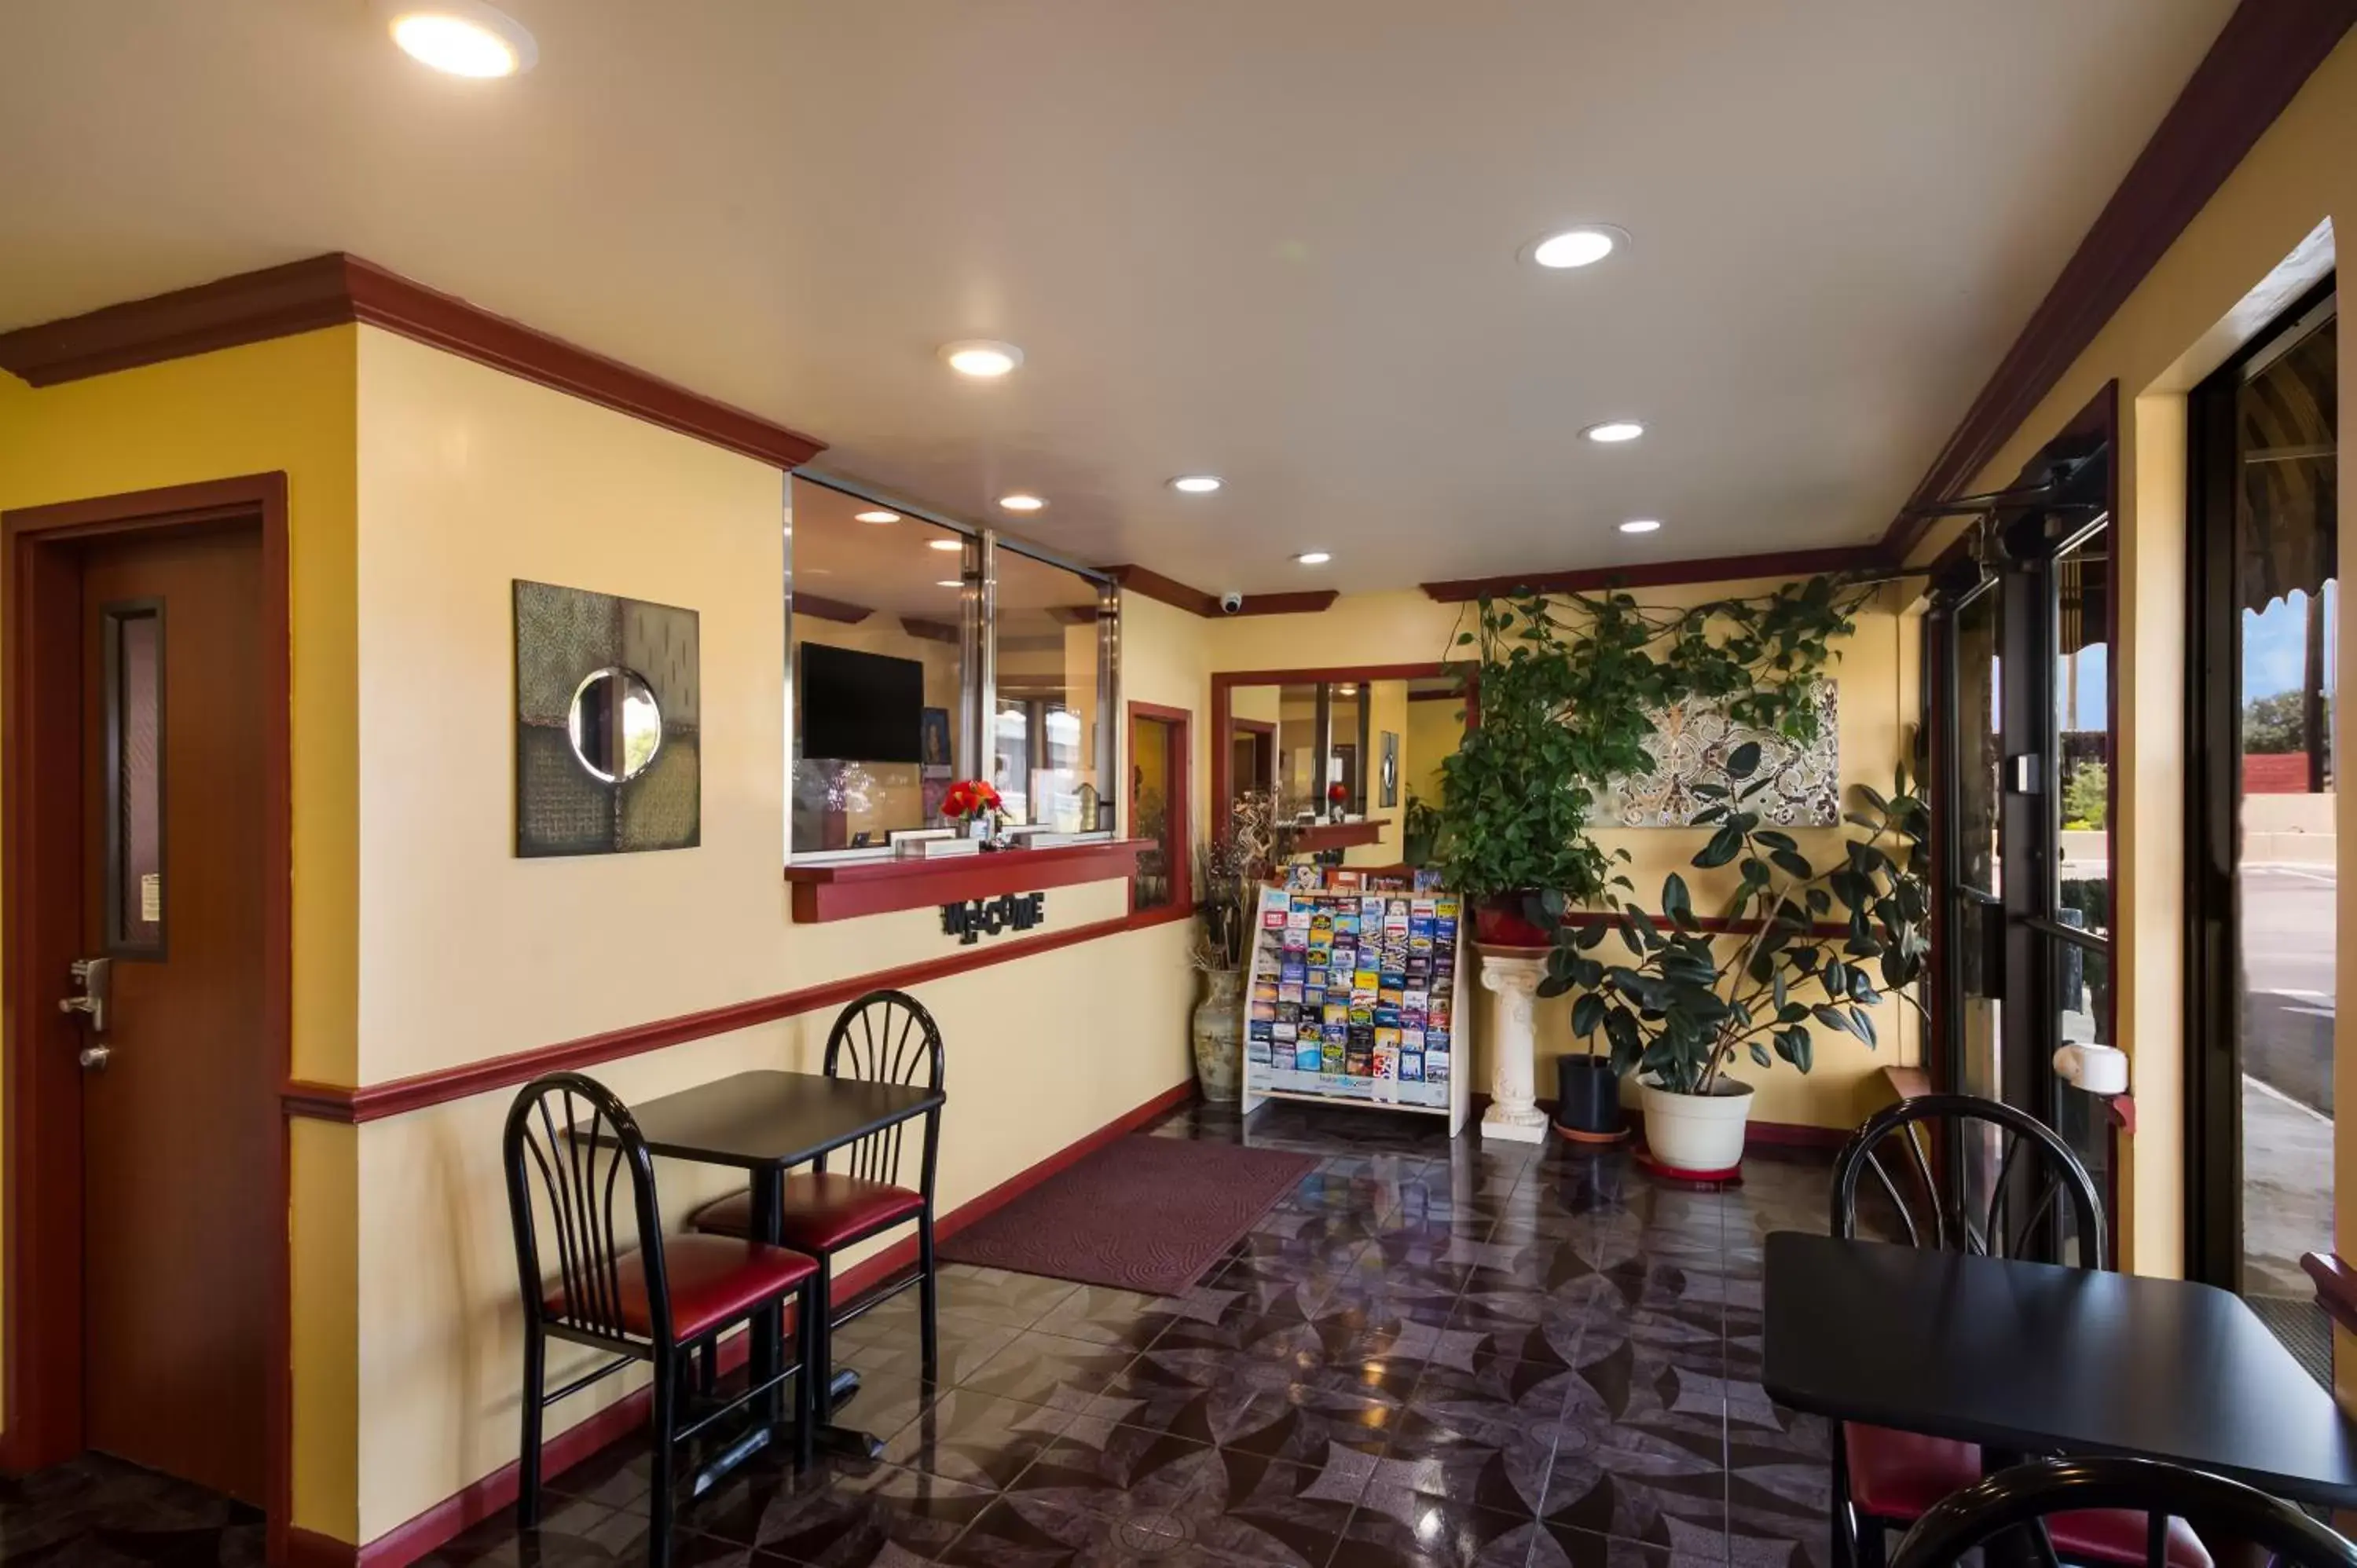 Lobby or reception, Lobby/Reception in Americas Best Value Inn Buda